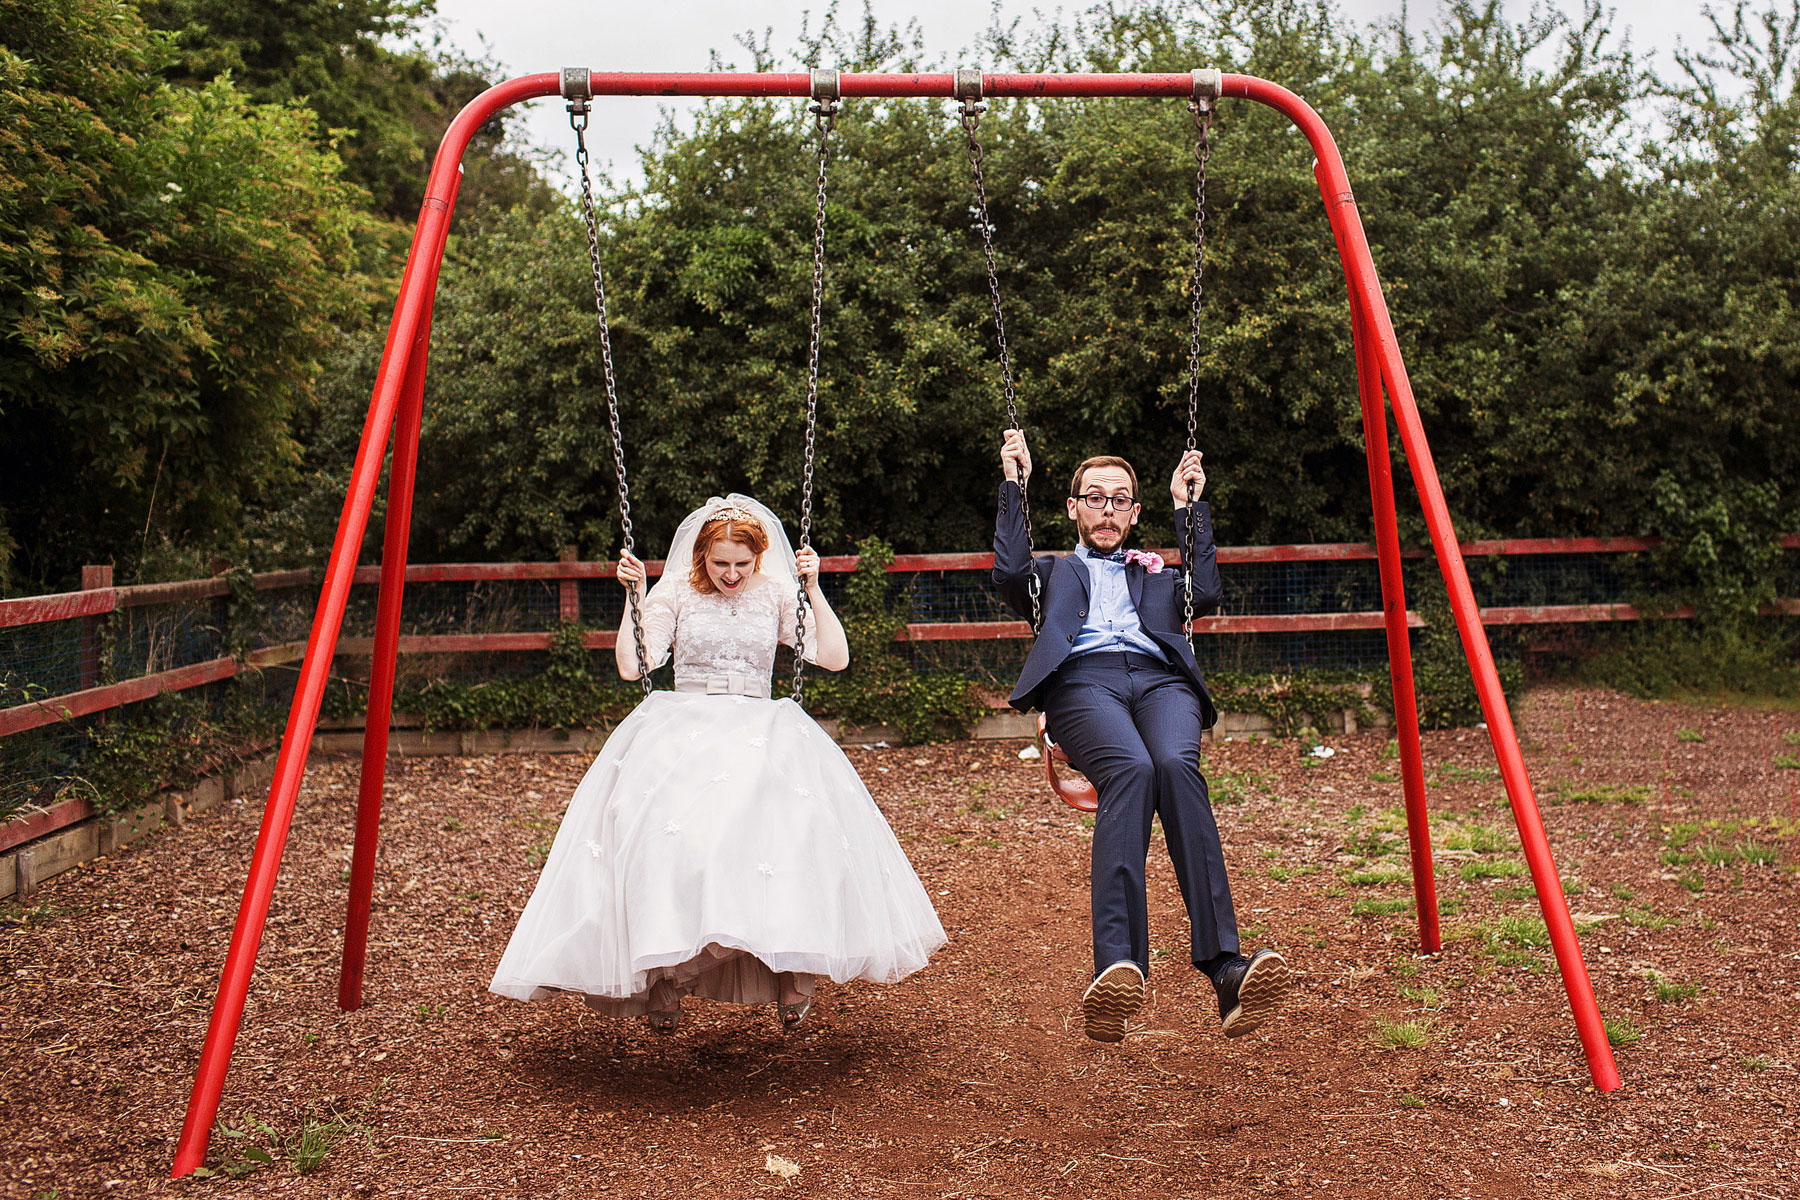 bride and groom having fun on the swings